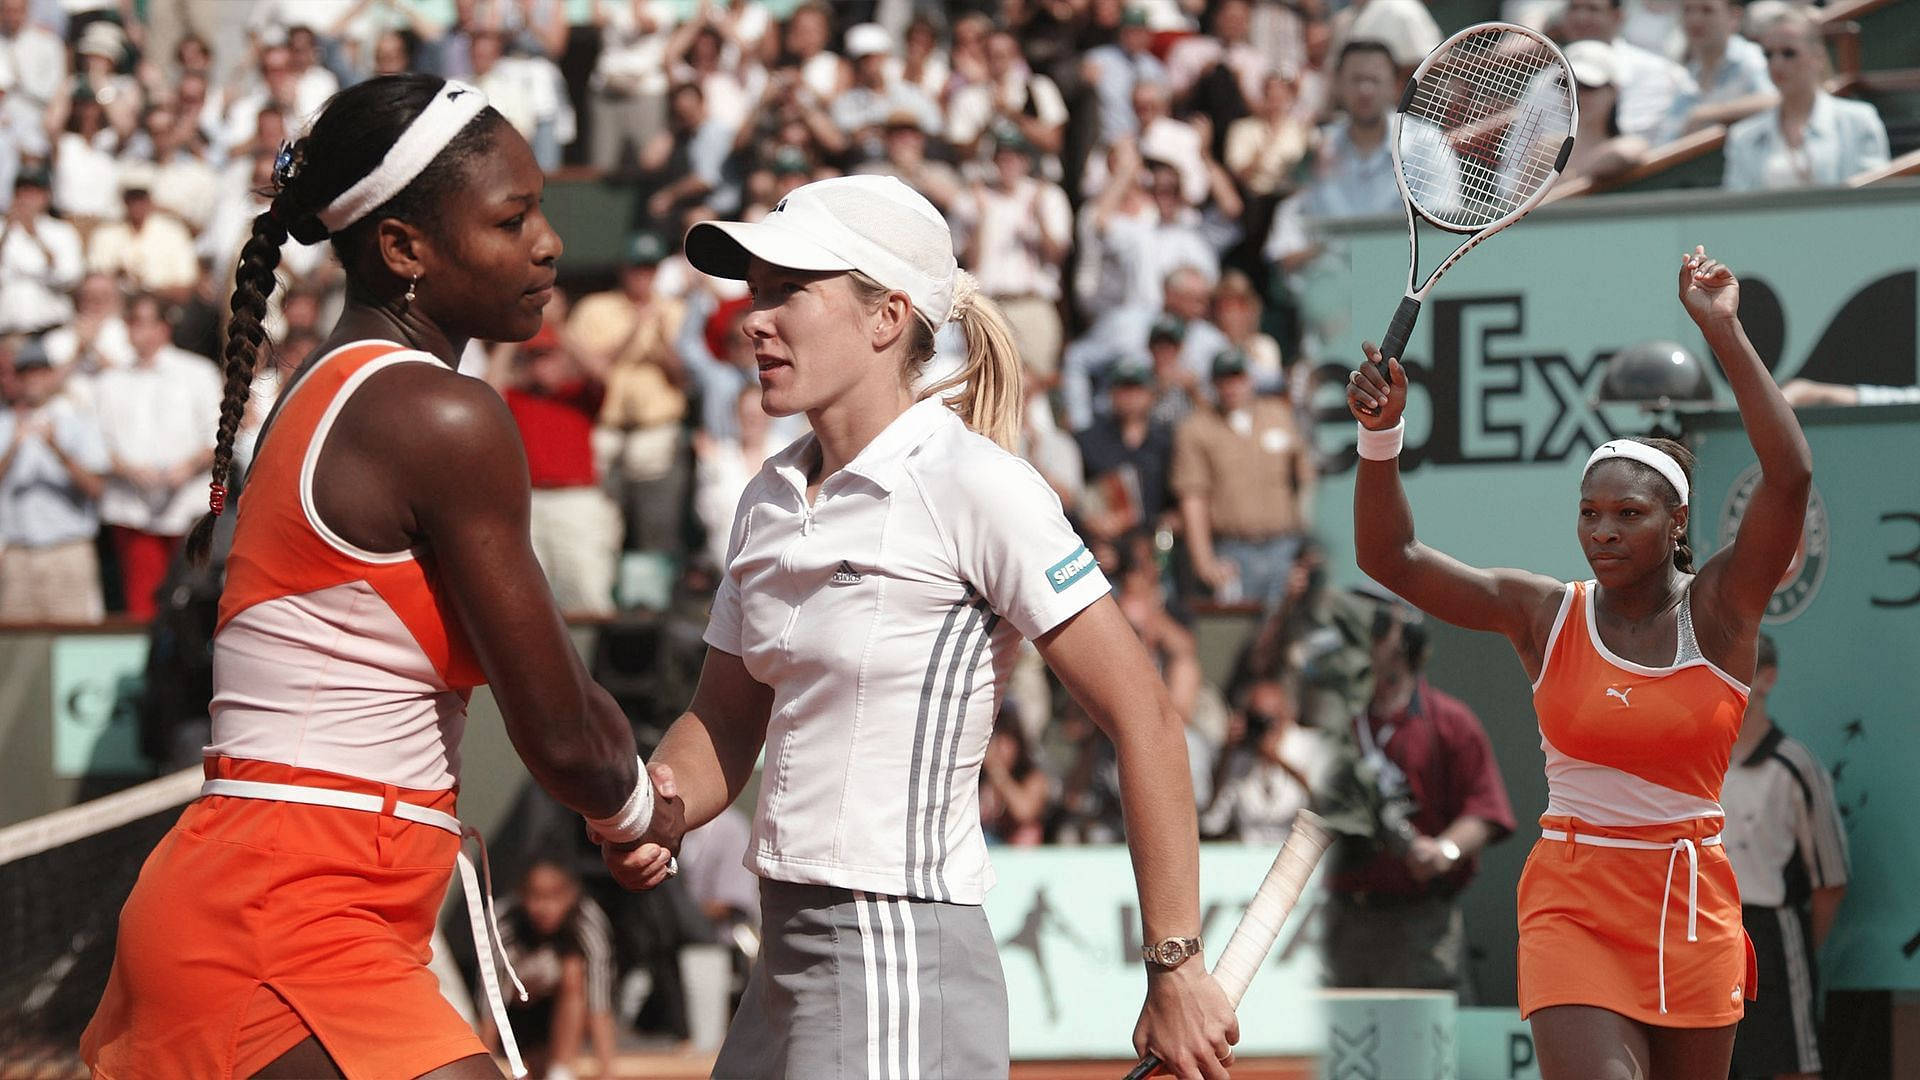 Partidode Tenis Entre Serena Williams Y Justine Henin Fondo de pantalla